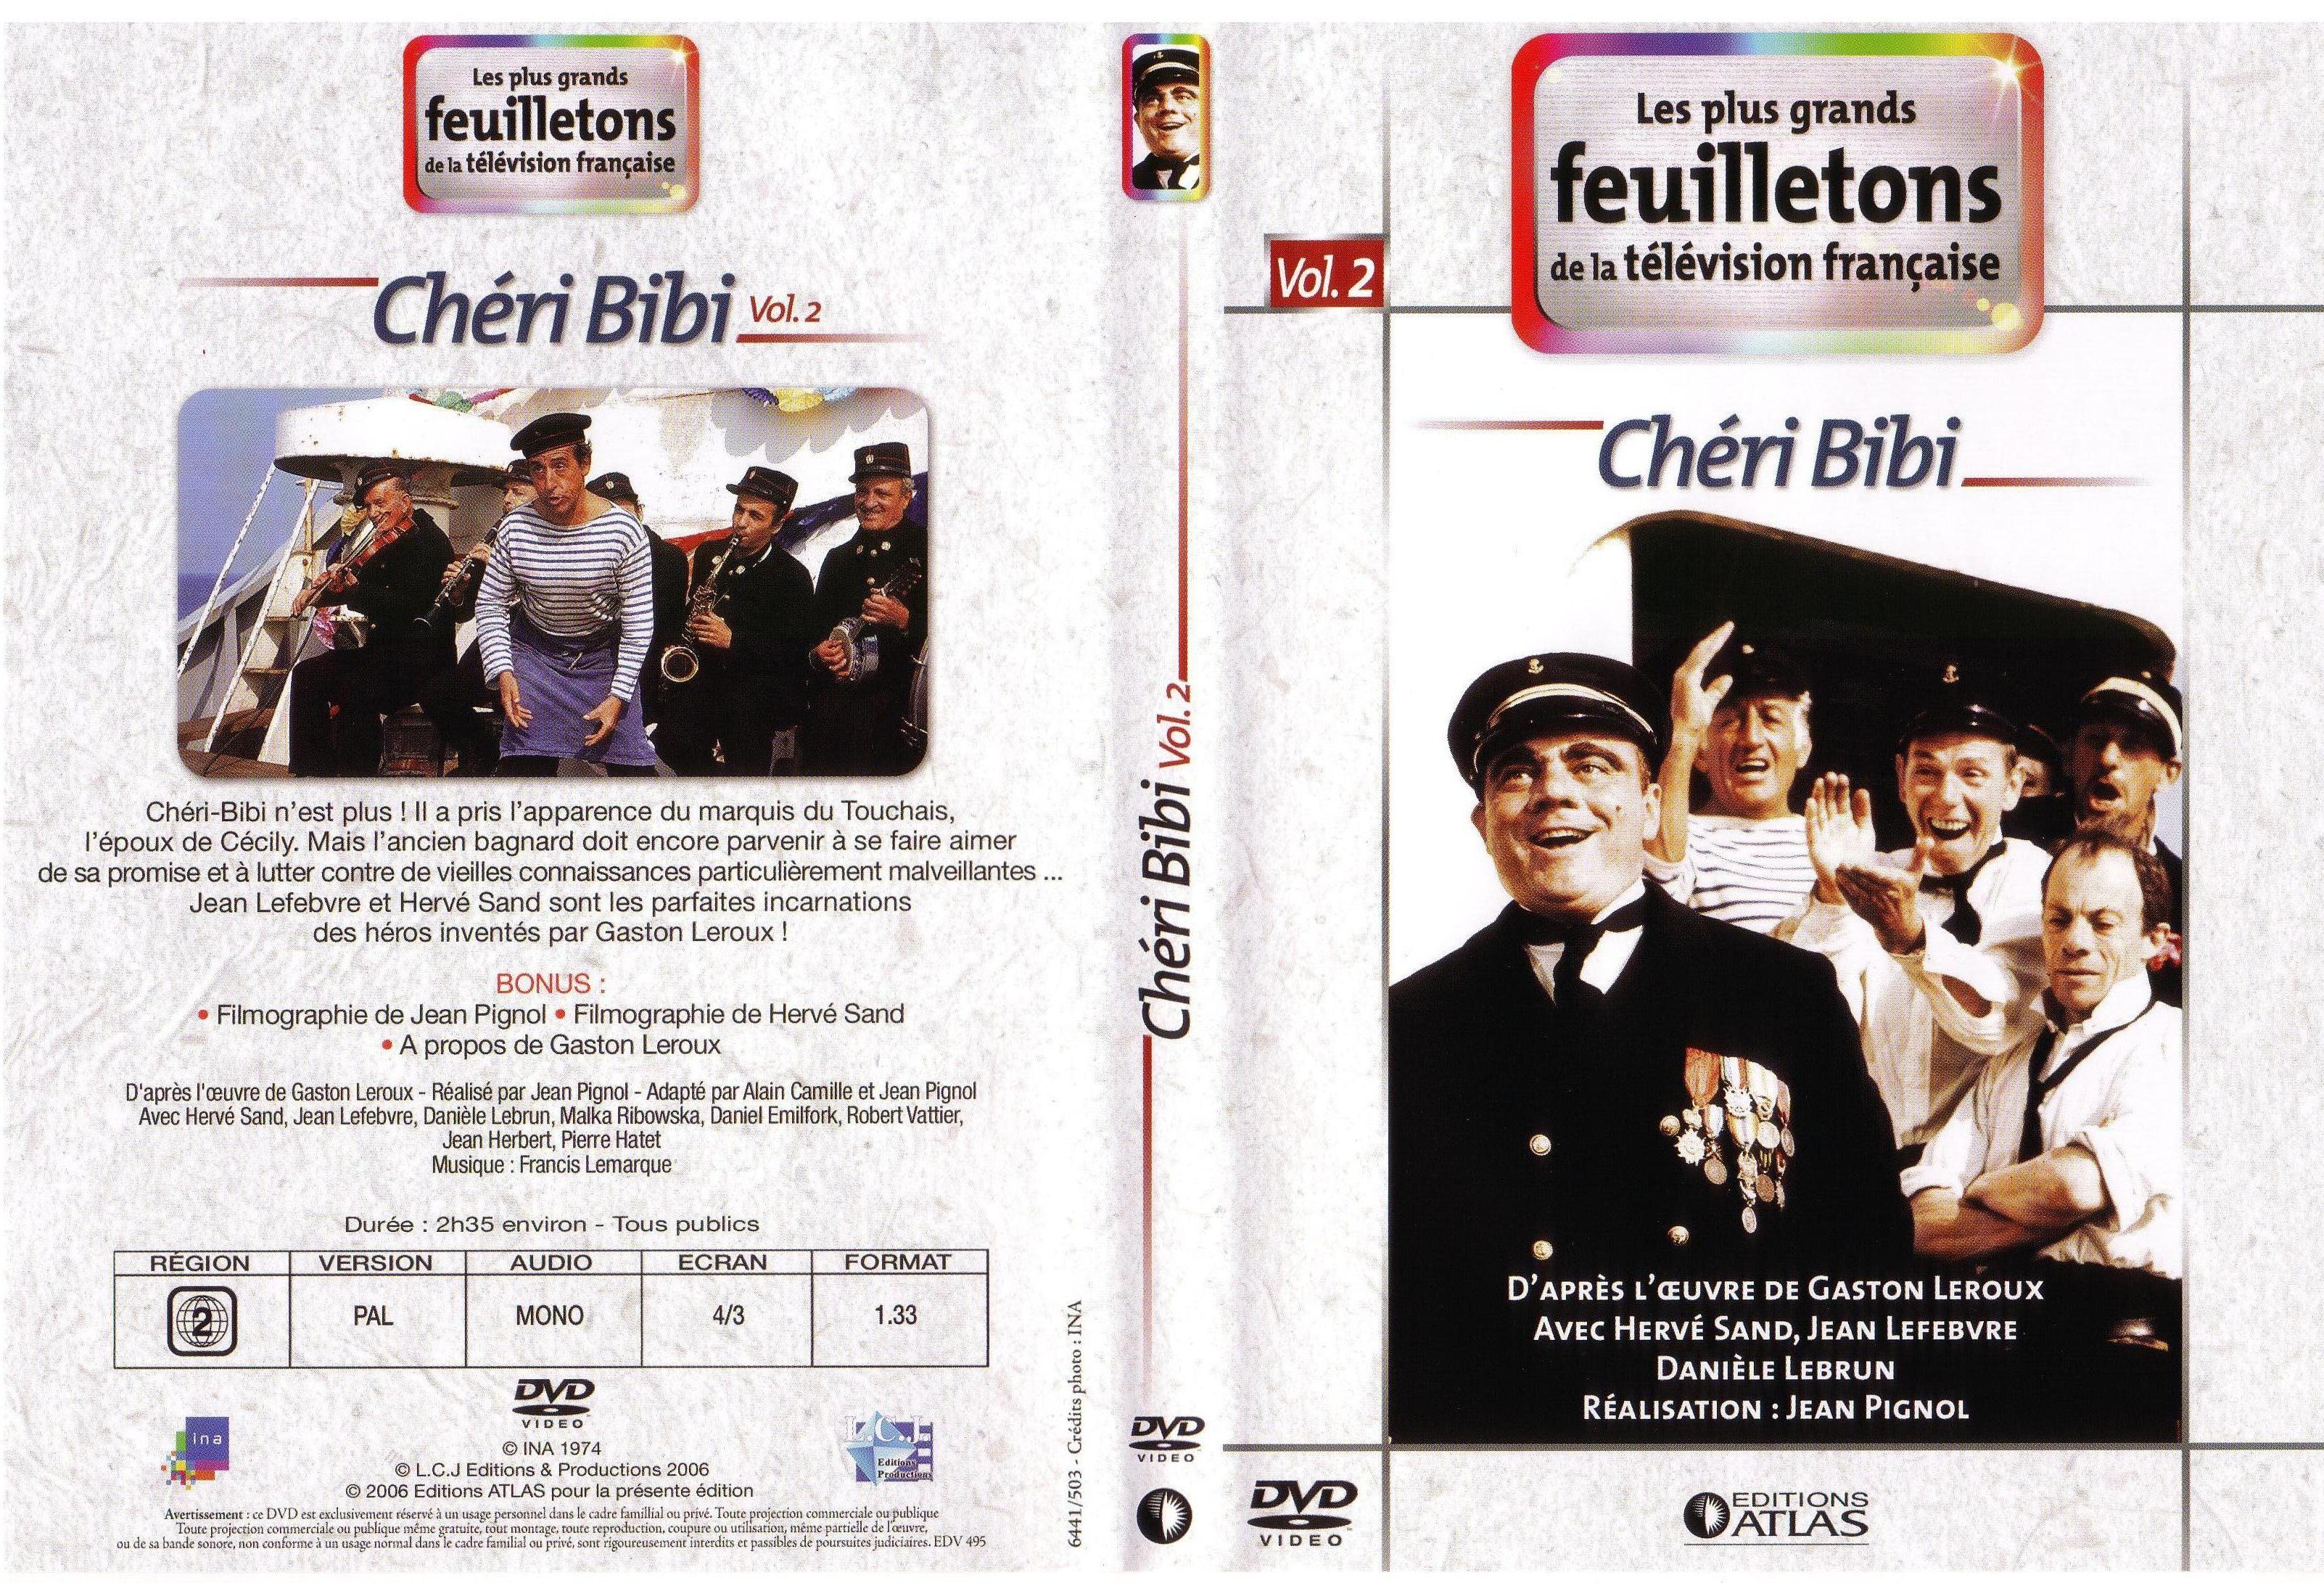 Jaquette DVD Chri bibi vol 2